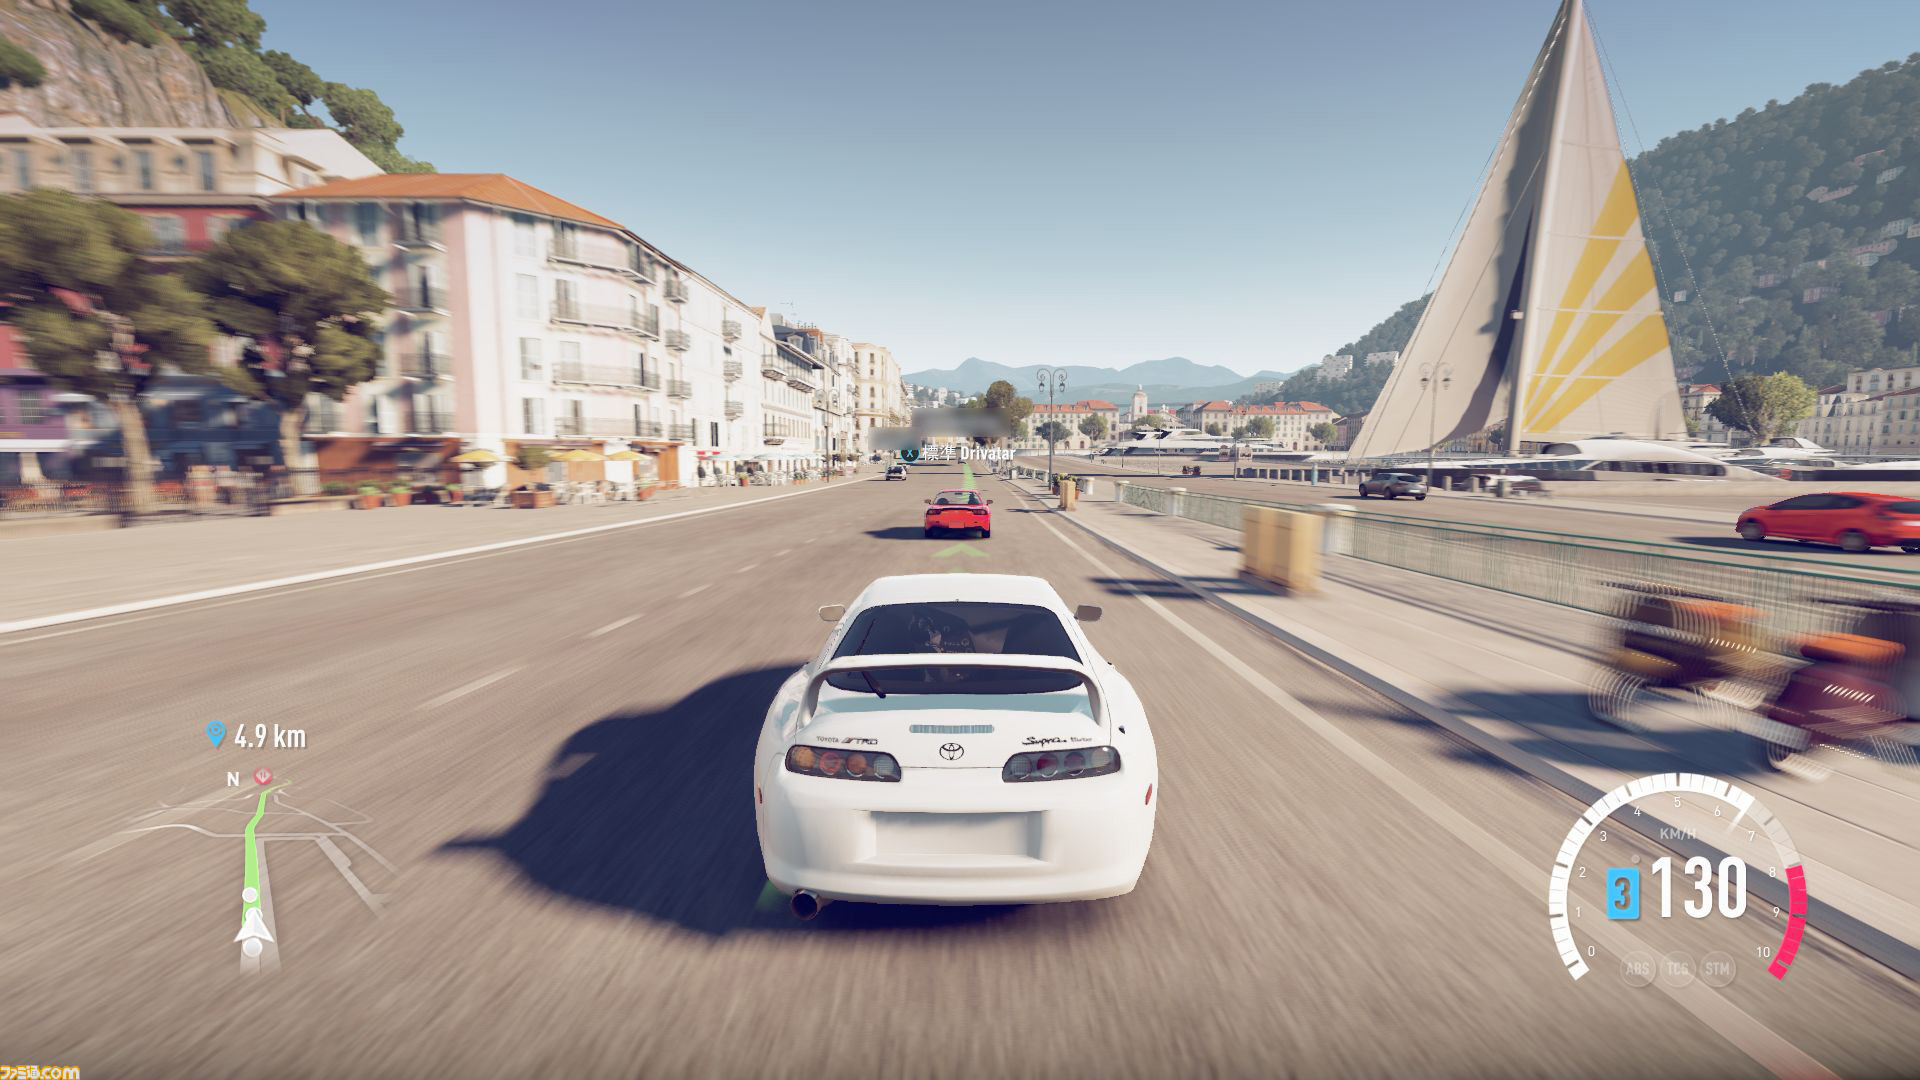 Forza Horizon 2 Presents Fast Furious をプレイ 映画 ワイルド スピード の世界で Forza を楽しむ心地よさ ファミ通 Com